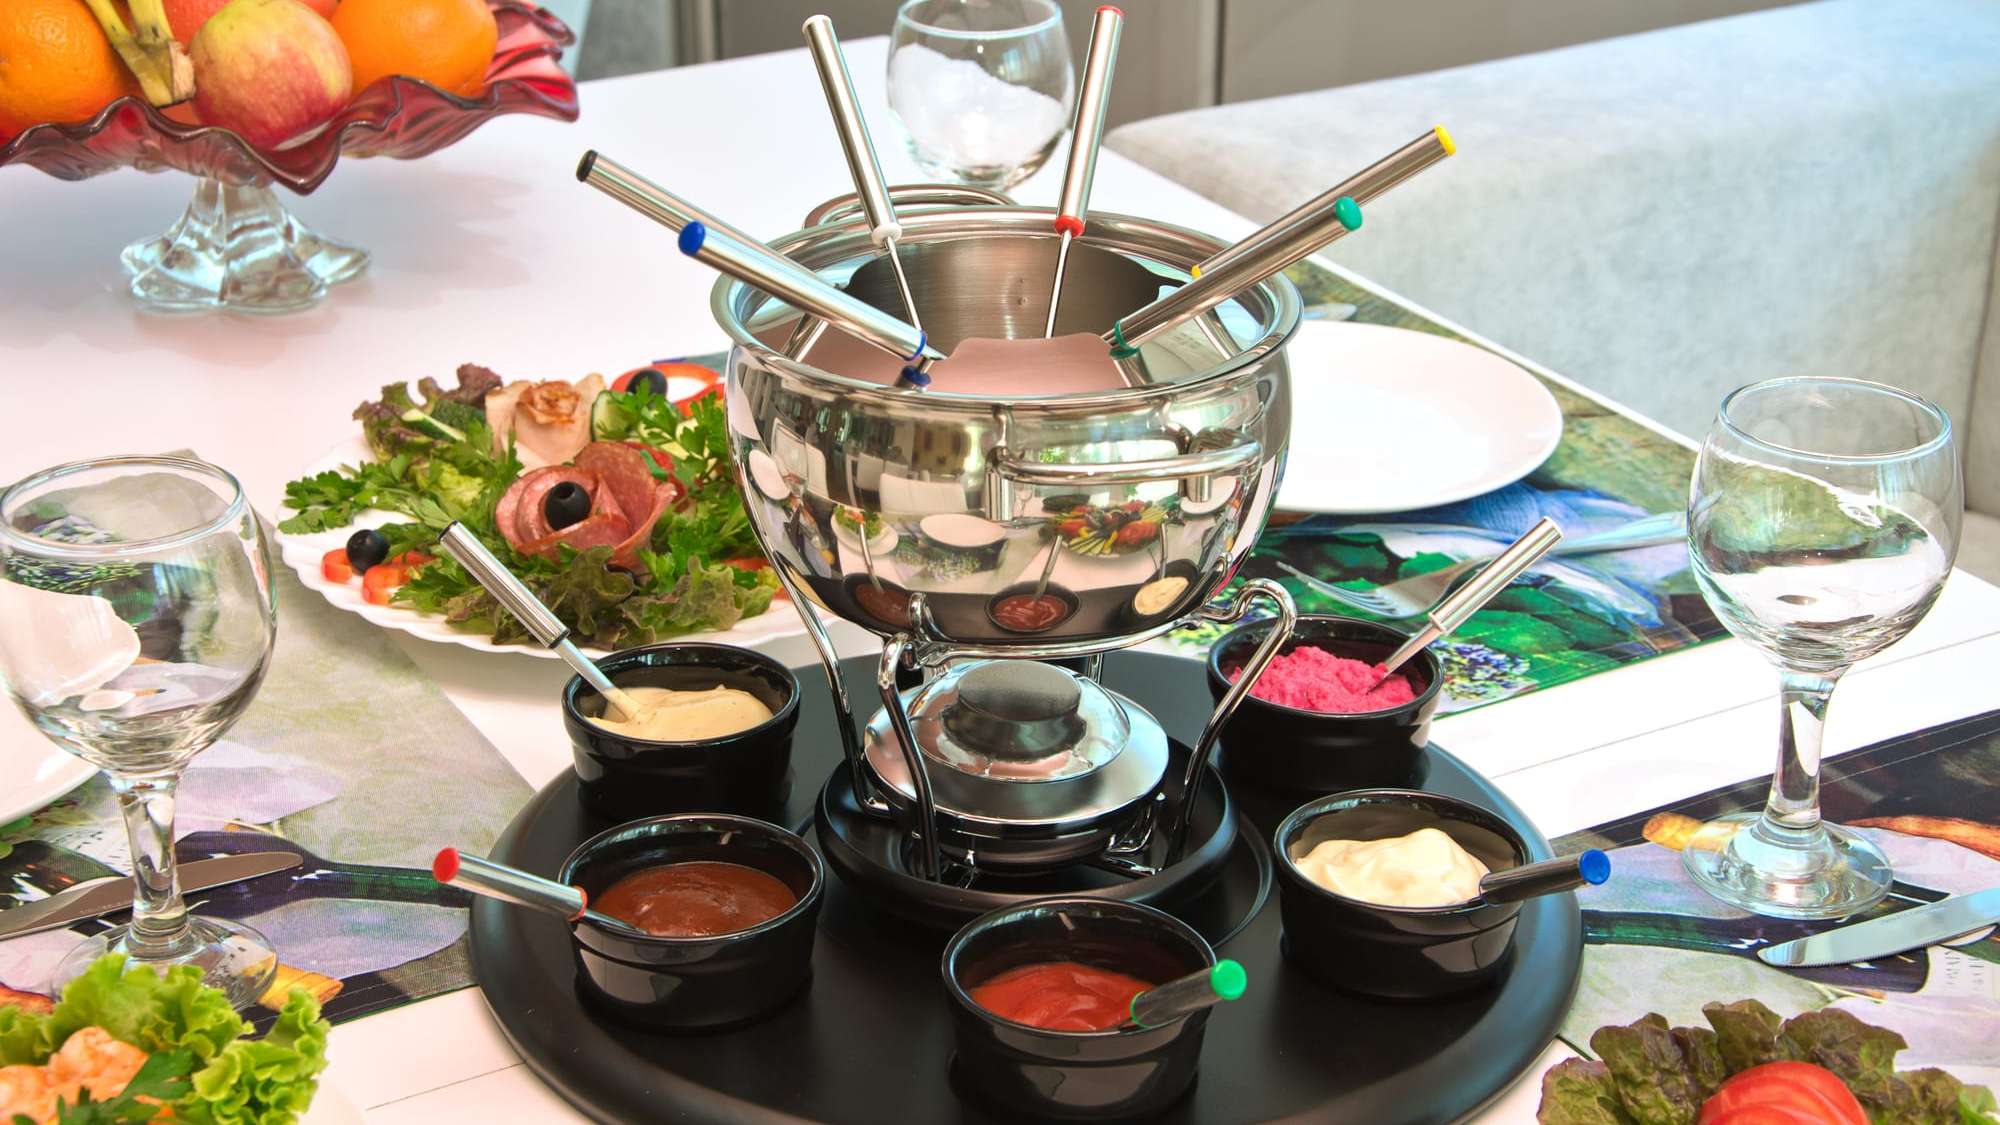 Une table dressée avec un caquelon à fondue chinoise et des sauces